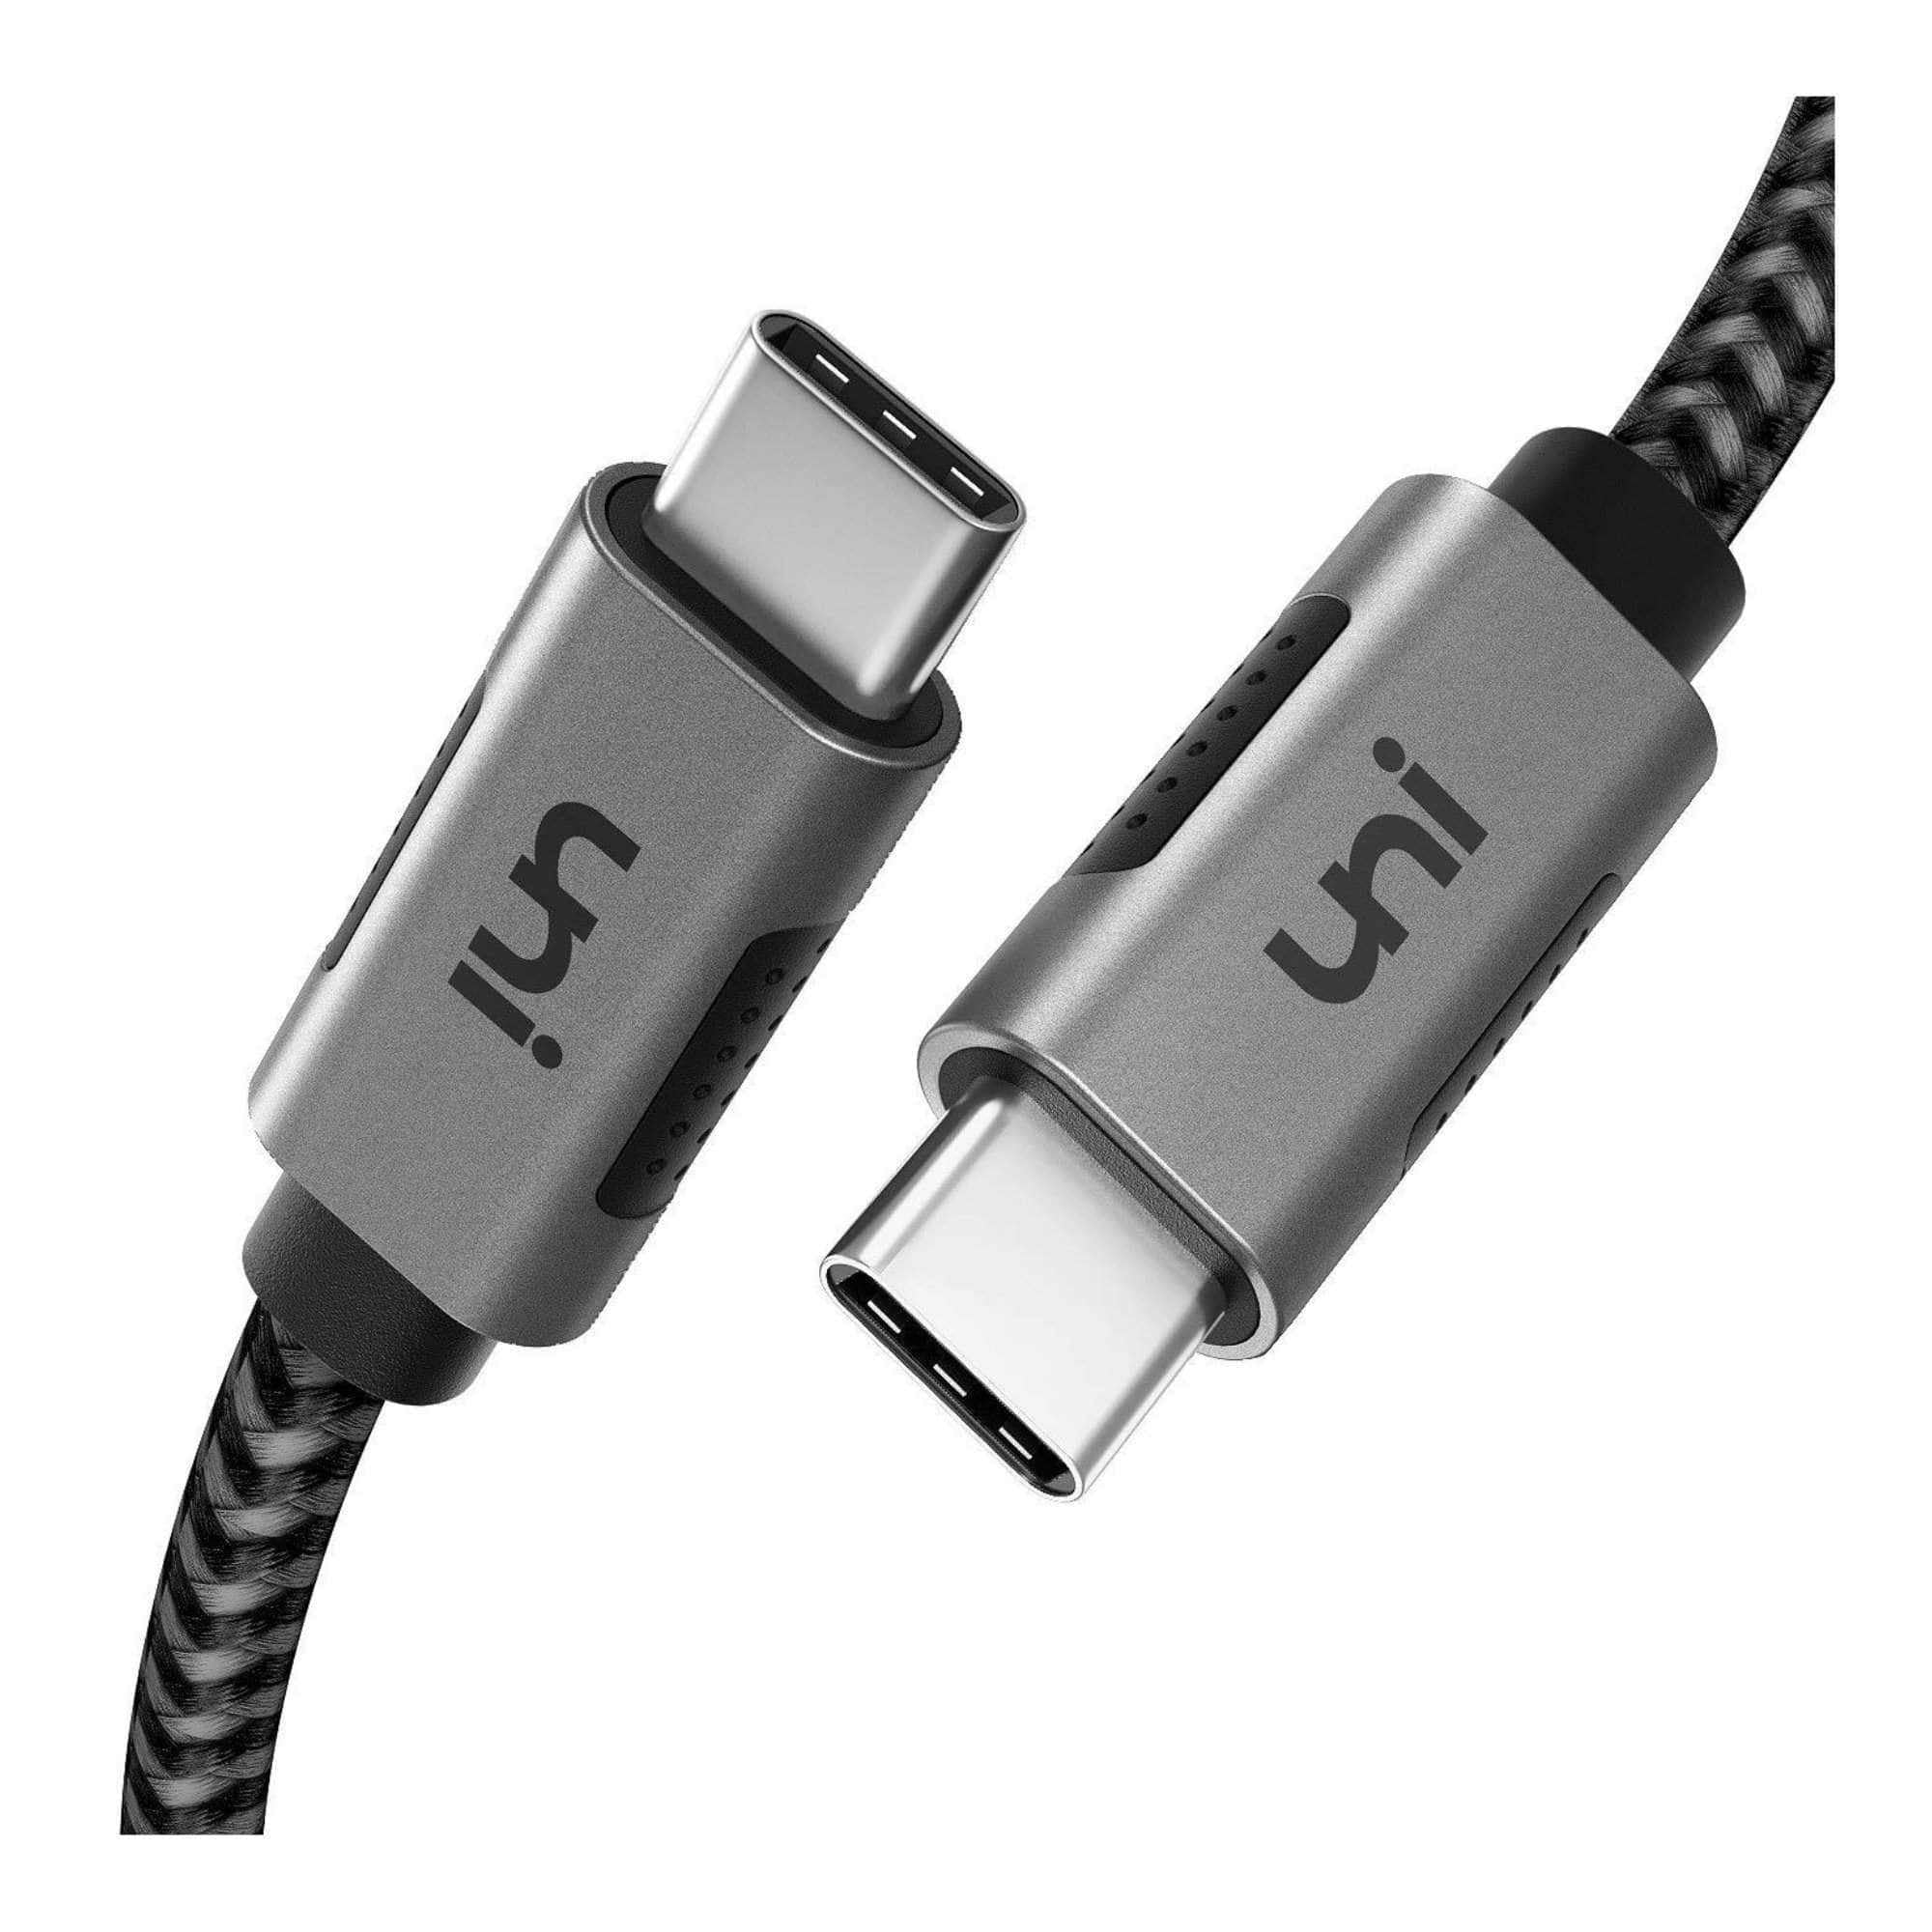 vooroordeel leiderschap toren USB C Charger Cable, USB Type C to USB C Video Cable | uni